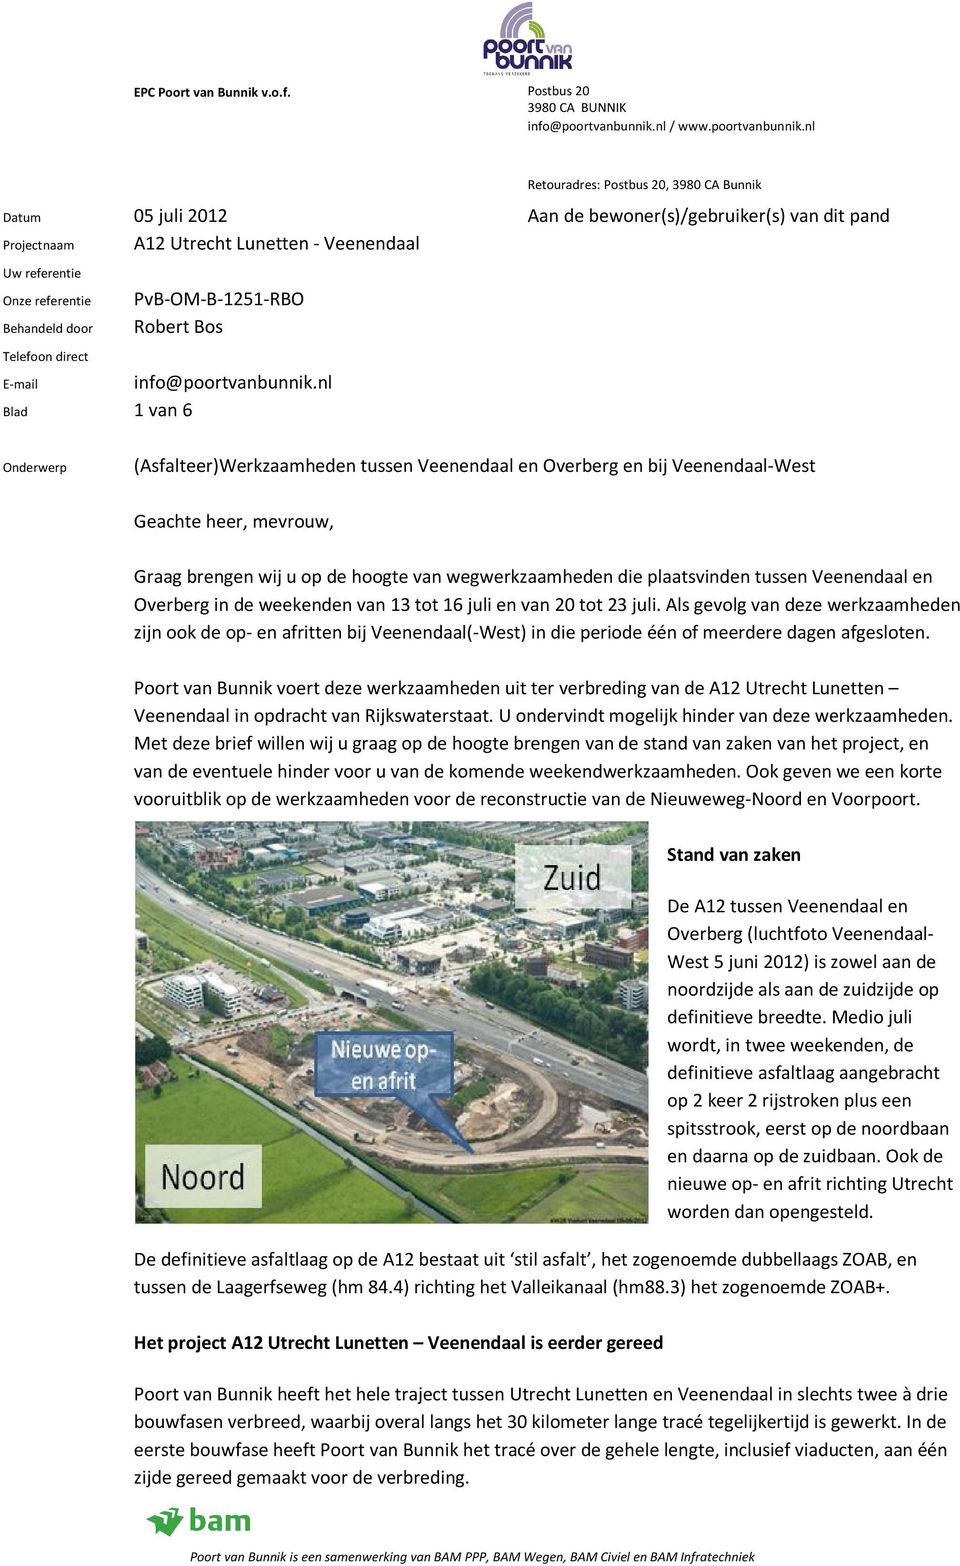 nl Blad 1 van 6 Onderwerp (Asfalteer)Werkzaamheden tussen Veenendaal en Overberg en bij Veenendaal-West Geachte heer, mevrouw, Graag brengen wij u op de hoogte van wegwerkzaamheden die plaatsvinden